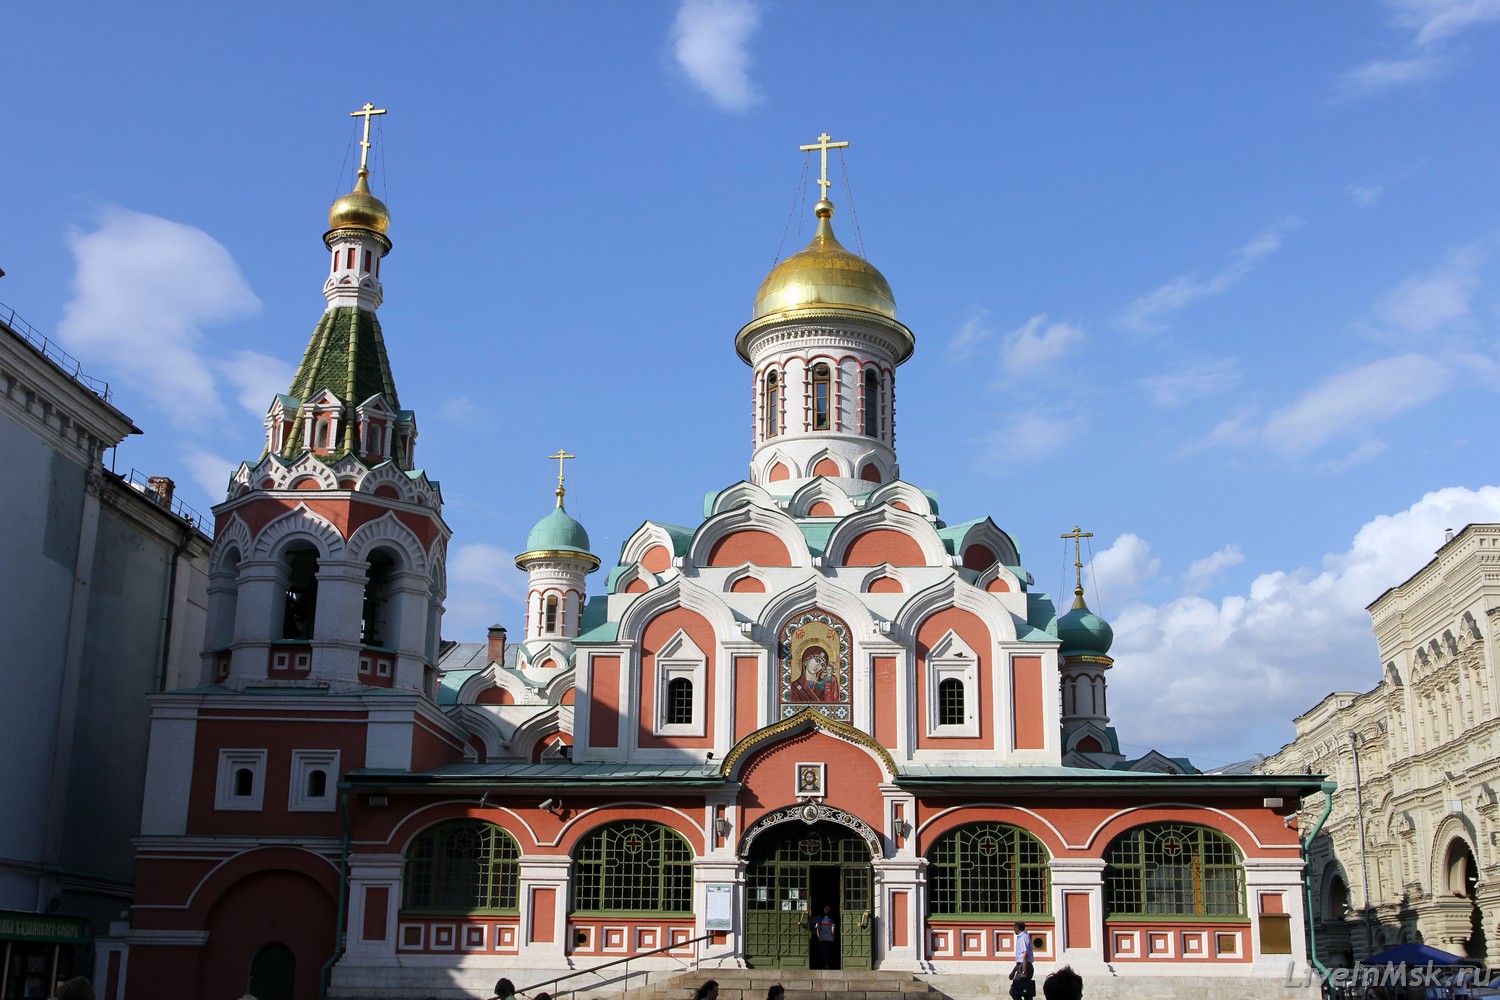 Казанский собор в Москве, фото 2016 года